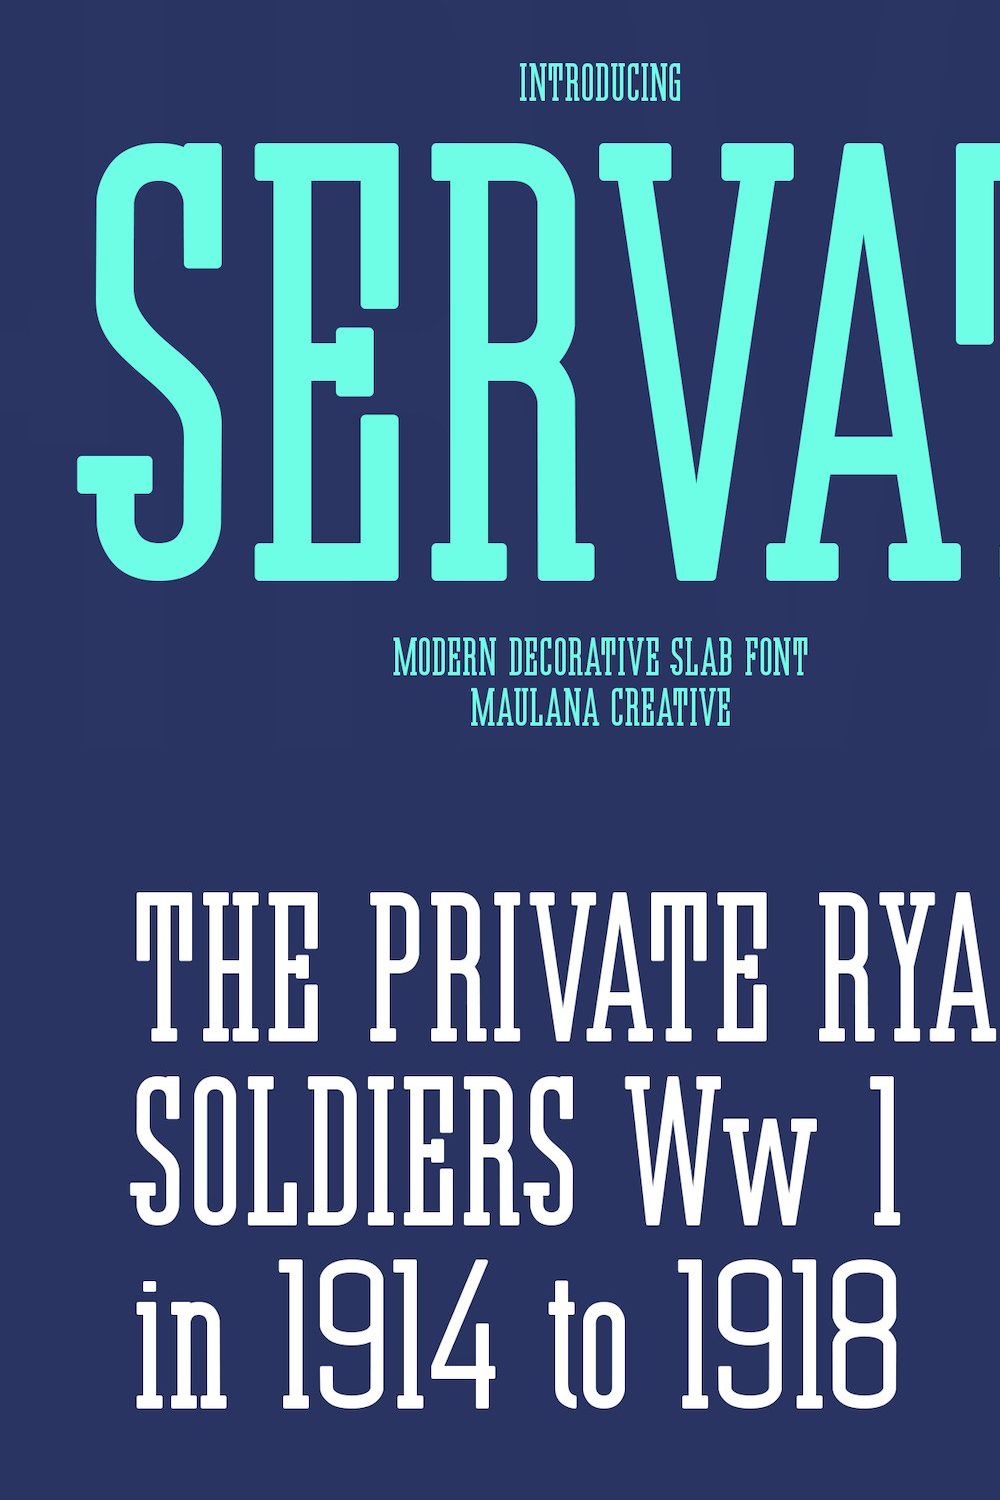 Servat Modern Decorative Slab Serif pinterest preview image.